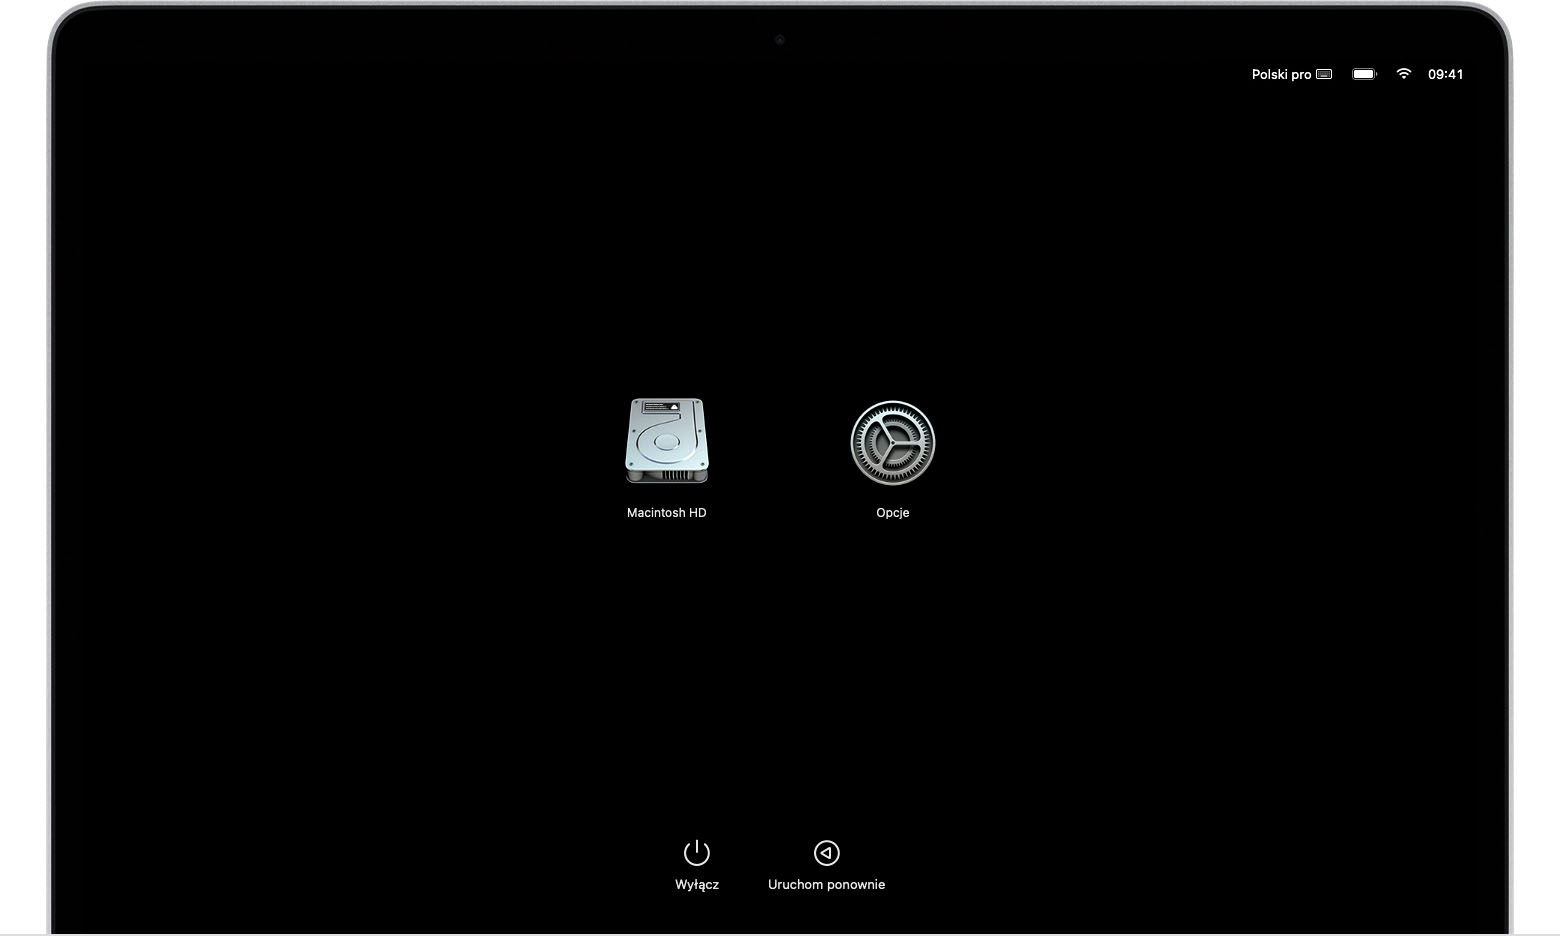 Ekran opcji startowych systemu macOS z ikonami Macintosh HD i Opcje